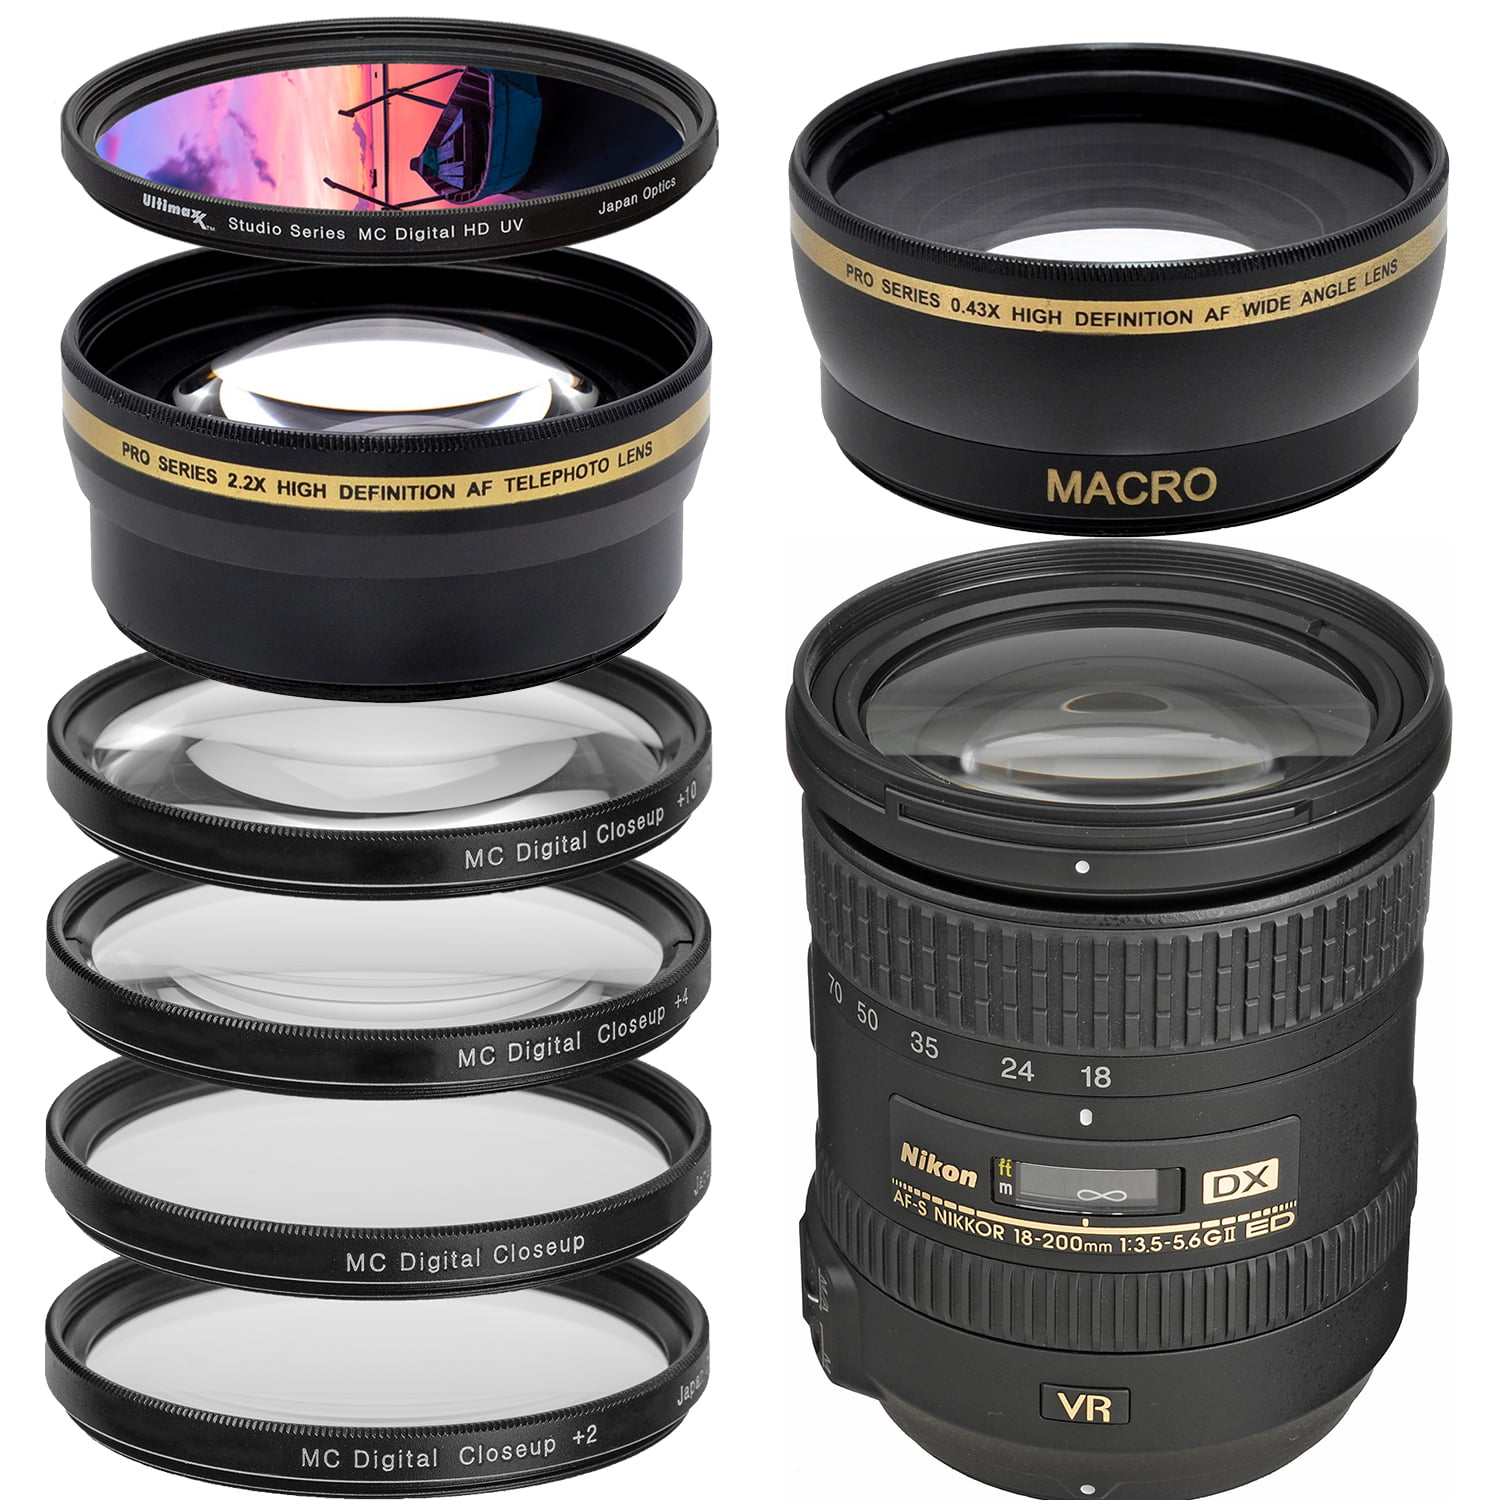 Nikon AF-S DX NIKKOR 18-200mm f/3.5-5.6G ED VR II Lens with Filter